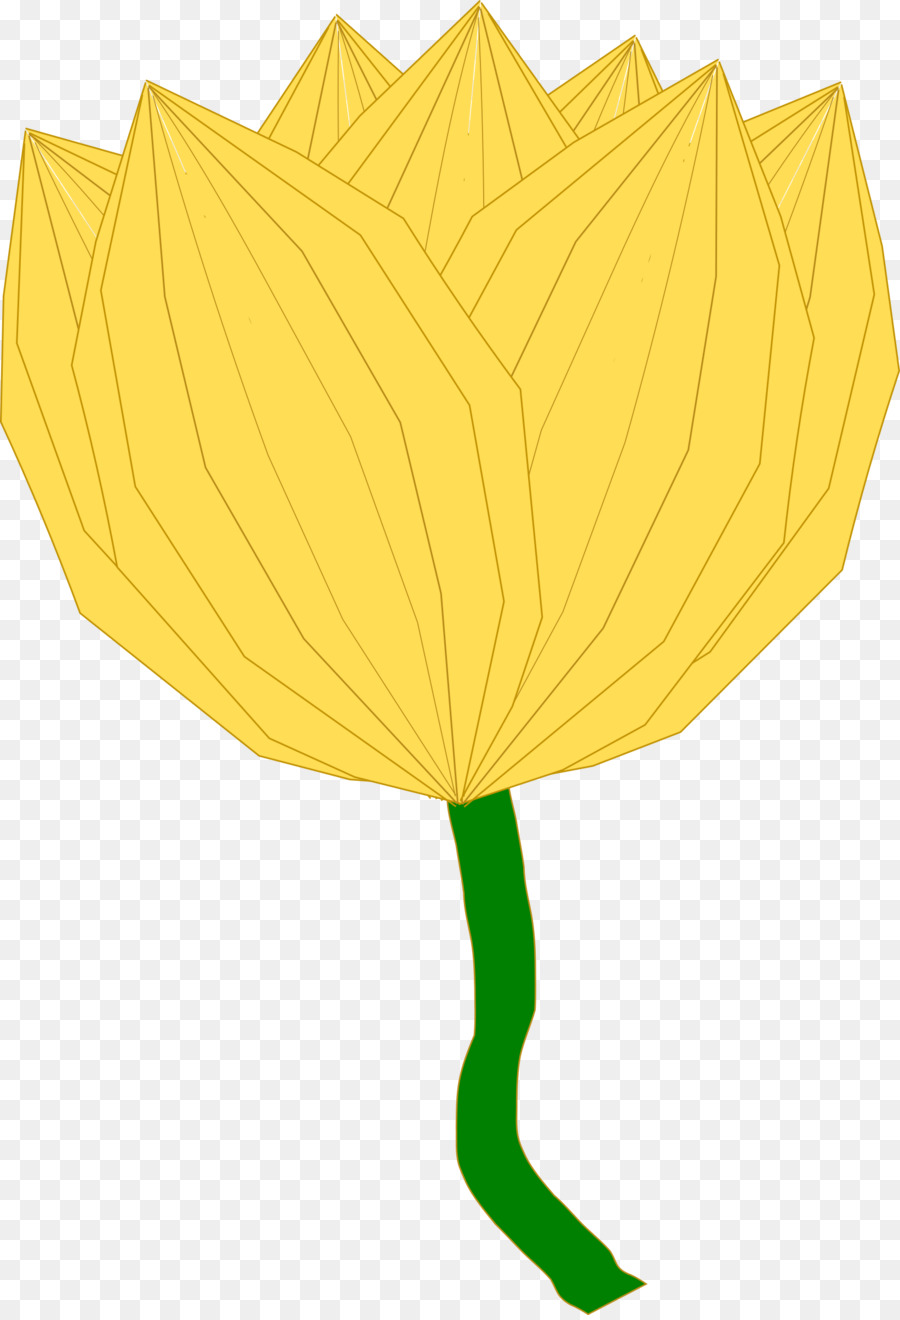 Fiore giallo Clip art - fiore verde